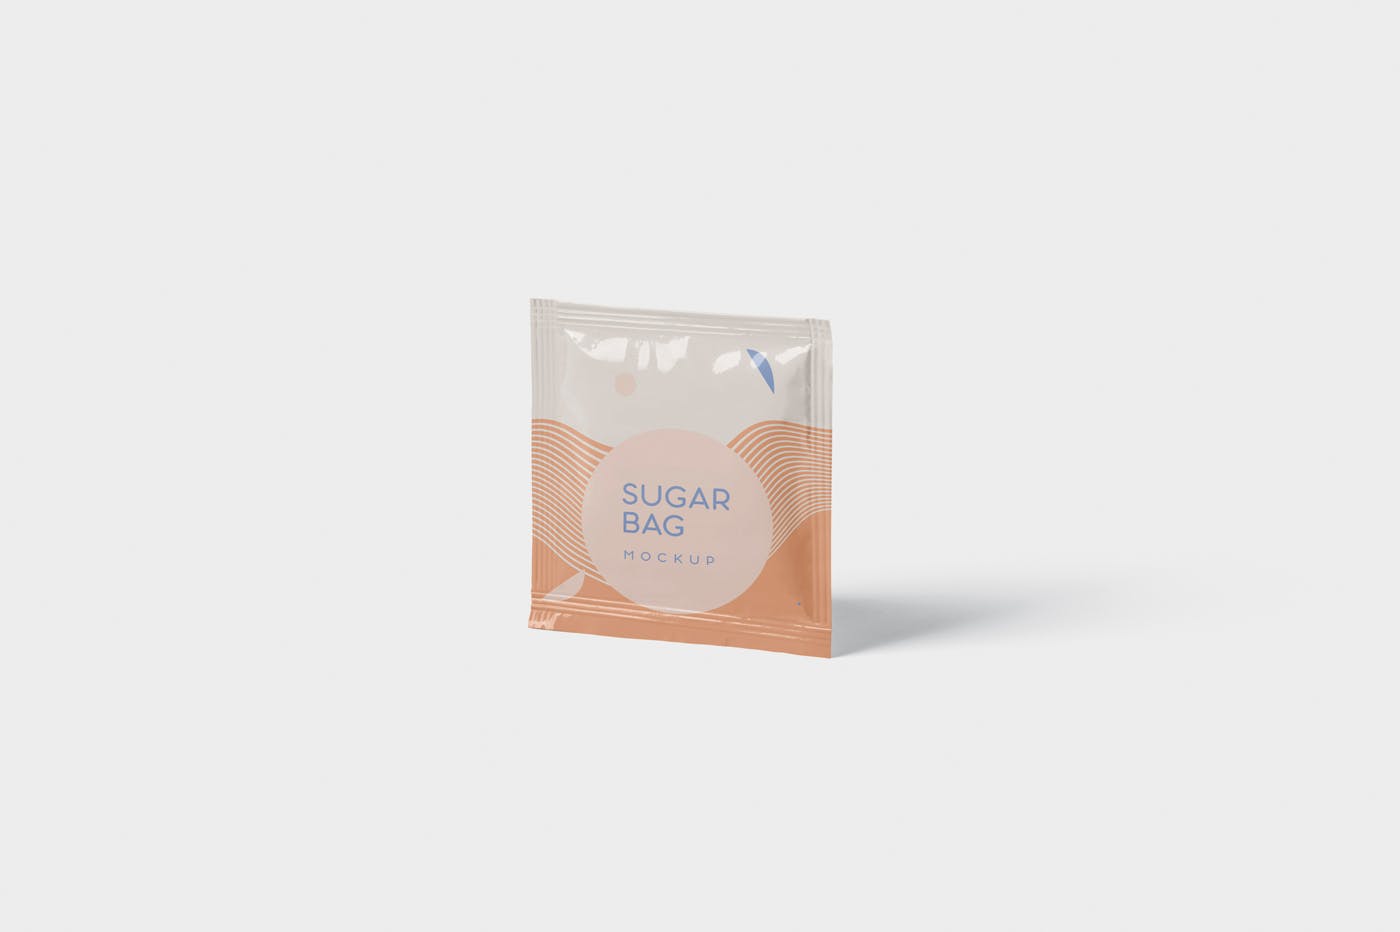 盐袋糖袋包装设计效果图素材中国精选 Salt OR Sugar Bag Mockup – Square Shaped插图(2)